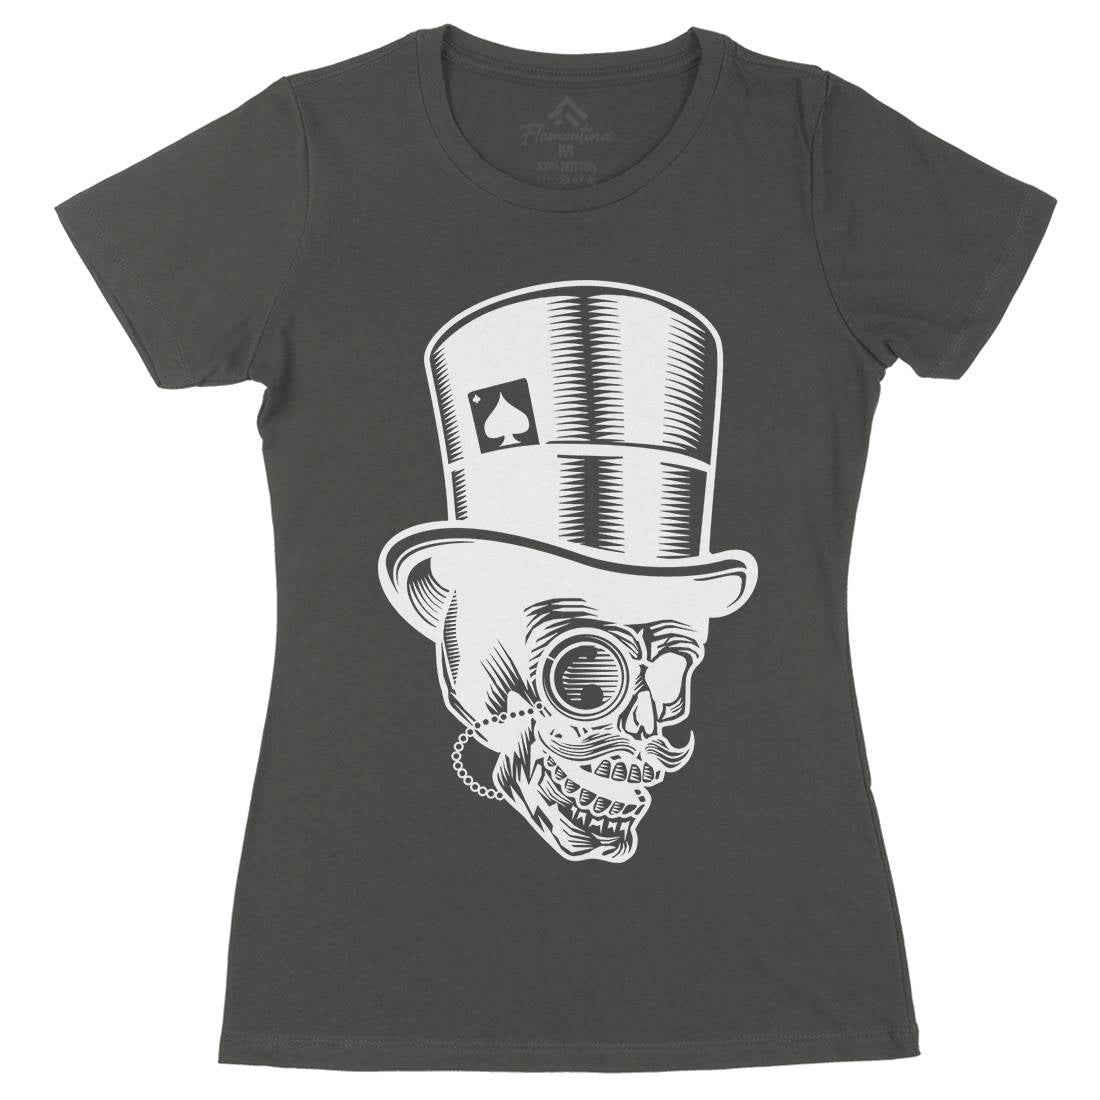 Classic Gentleman Skull Womens Organic Crew Neck T-Shirt Horror B513